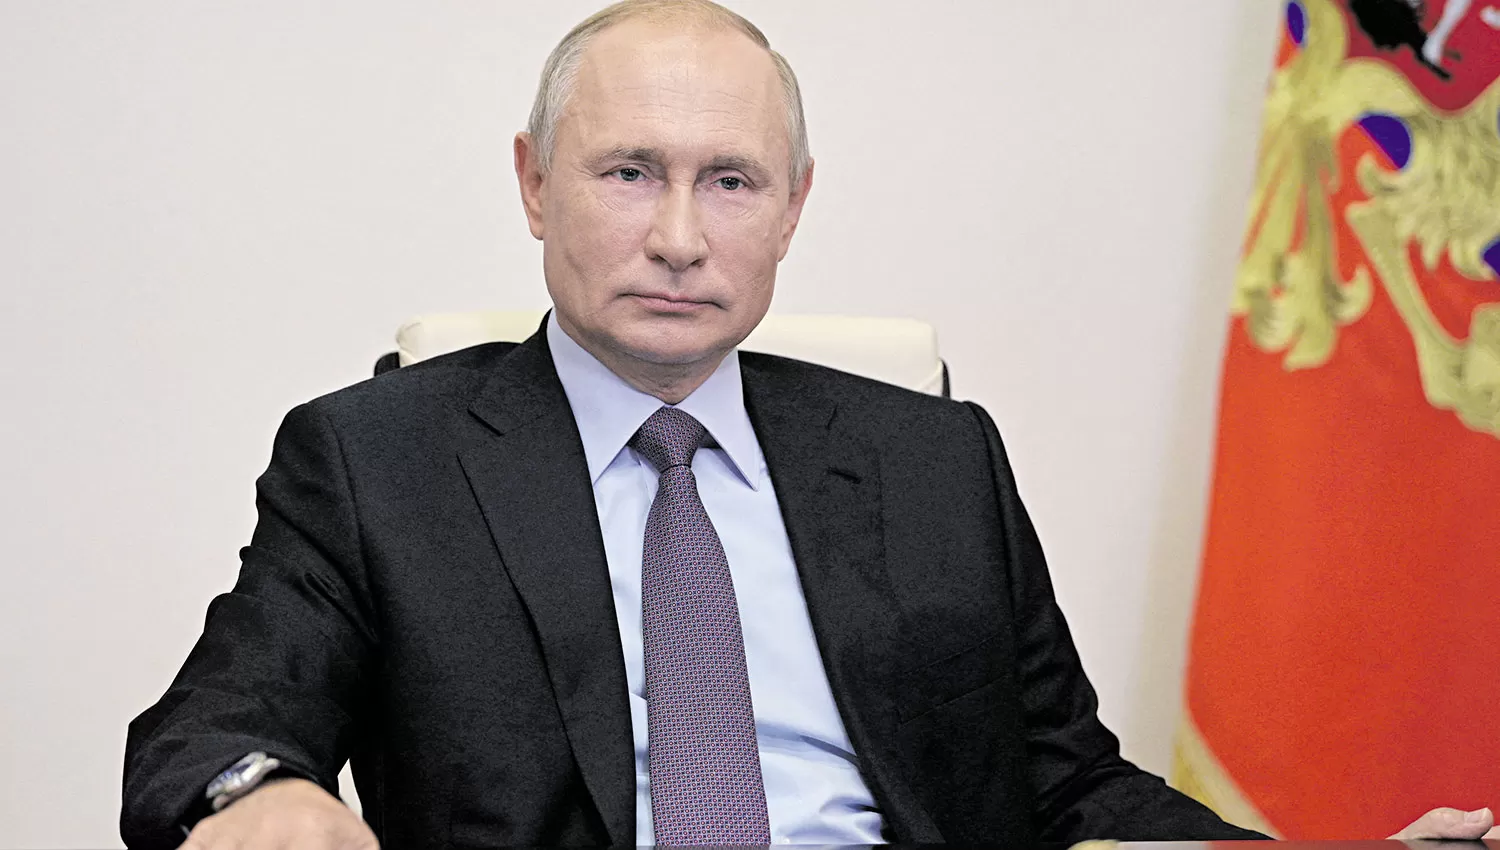 PRESIDENTE RUSO. Putin no descarta la alternativa de las armas nucleares si su país enfrenta una amenaza existencial, dijo el portavoz del Kremlin. Foto de Archivo